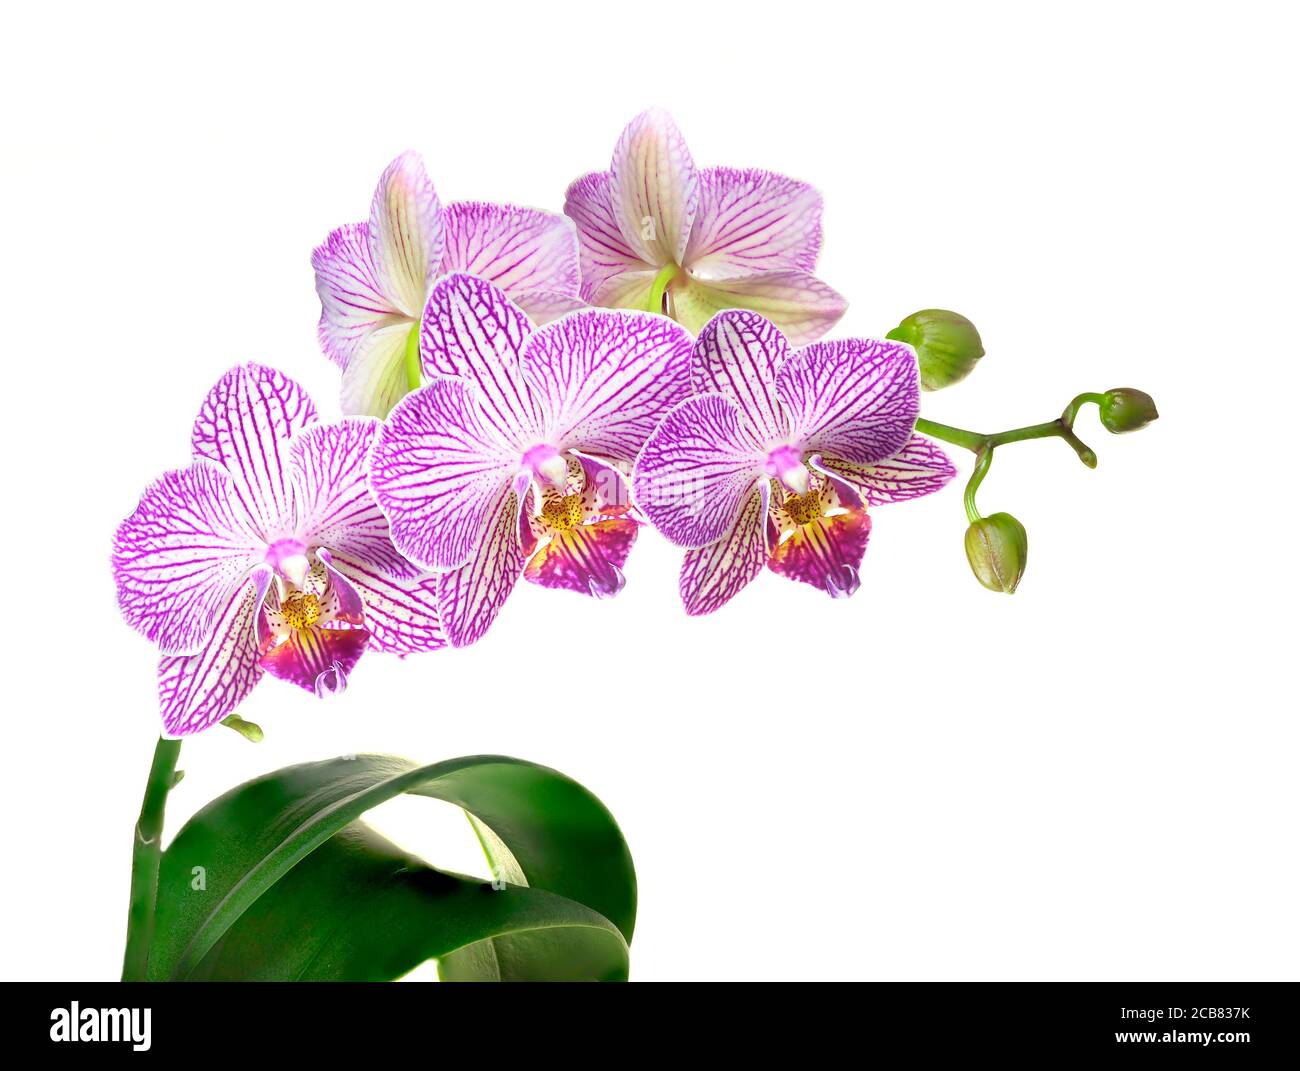 Immagine closeup impilata della messa a fuoco di un'orchidea viola e bianca Isolato su bianco Foto Stock